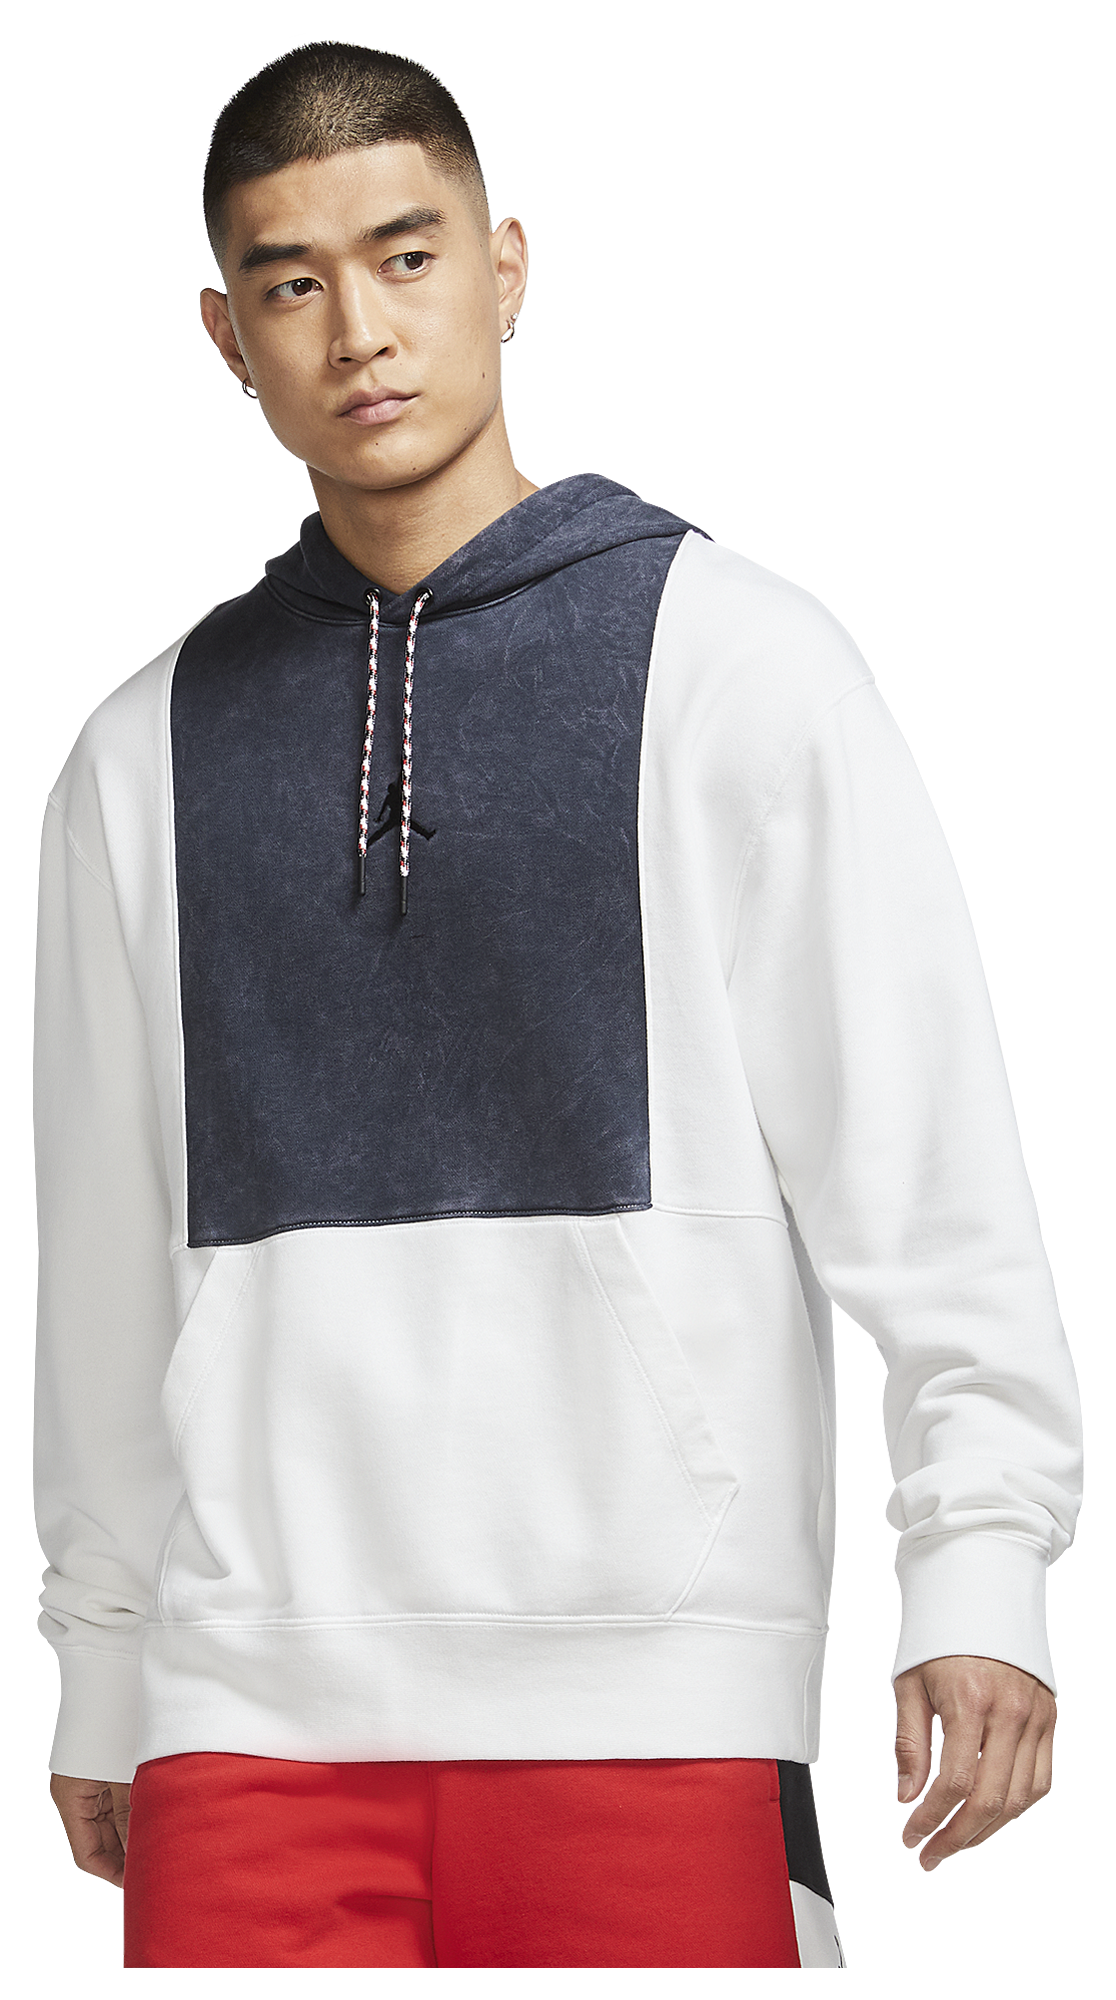 jordan legacy hoodie white